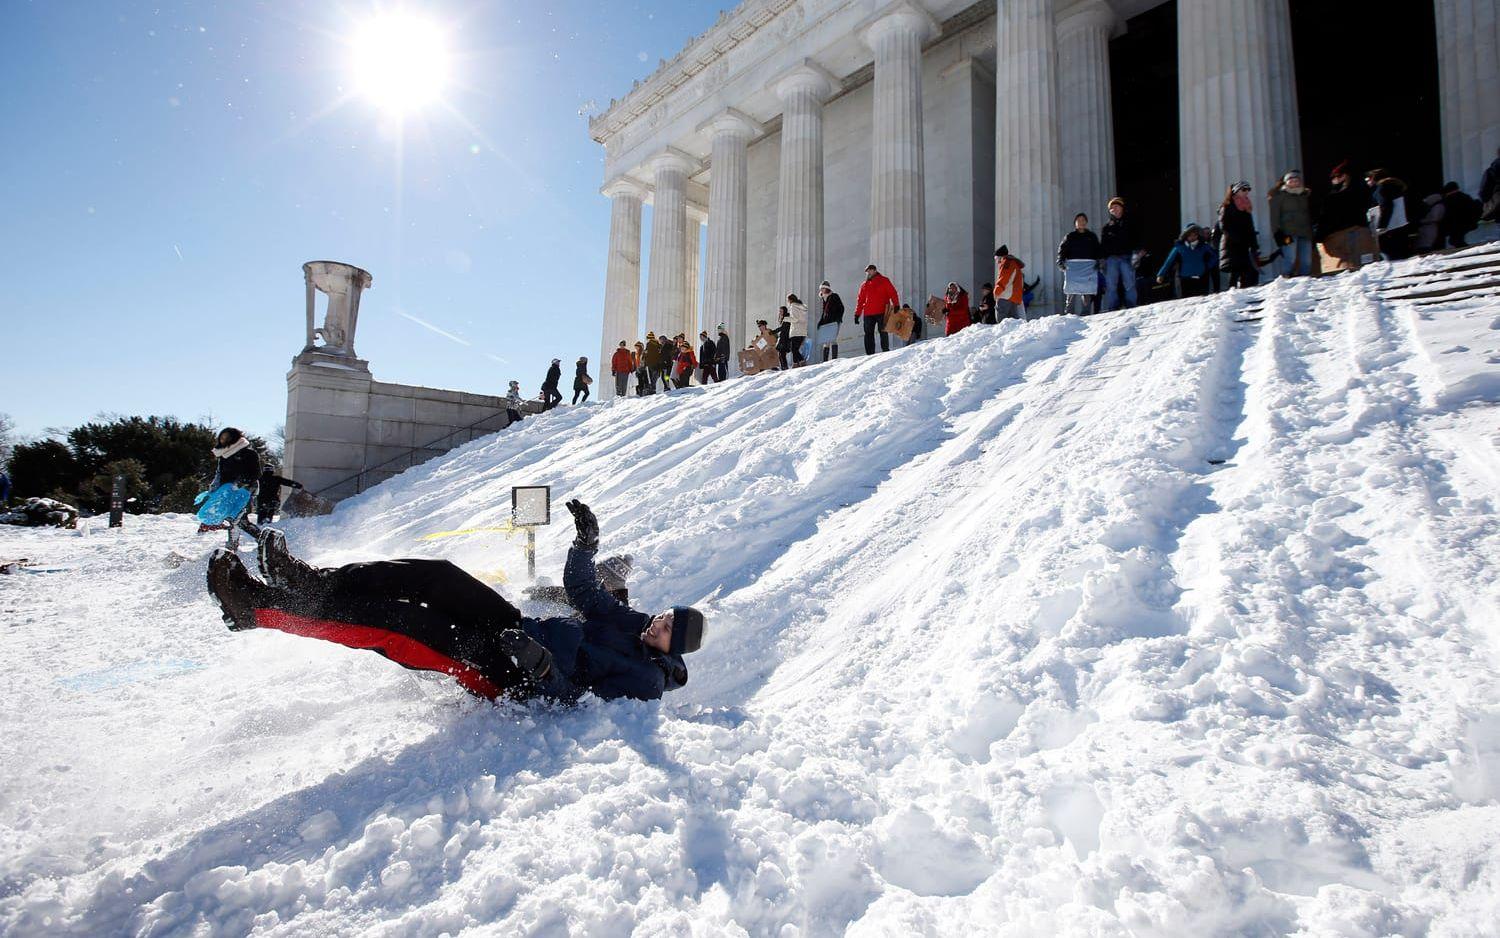 Fördelen med snö är att det kan bli rätt kul när det väl har lagt sig. Här passade några på att åka pulka vid Lincolnmonumentet i Washington. Foto. TT